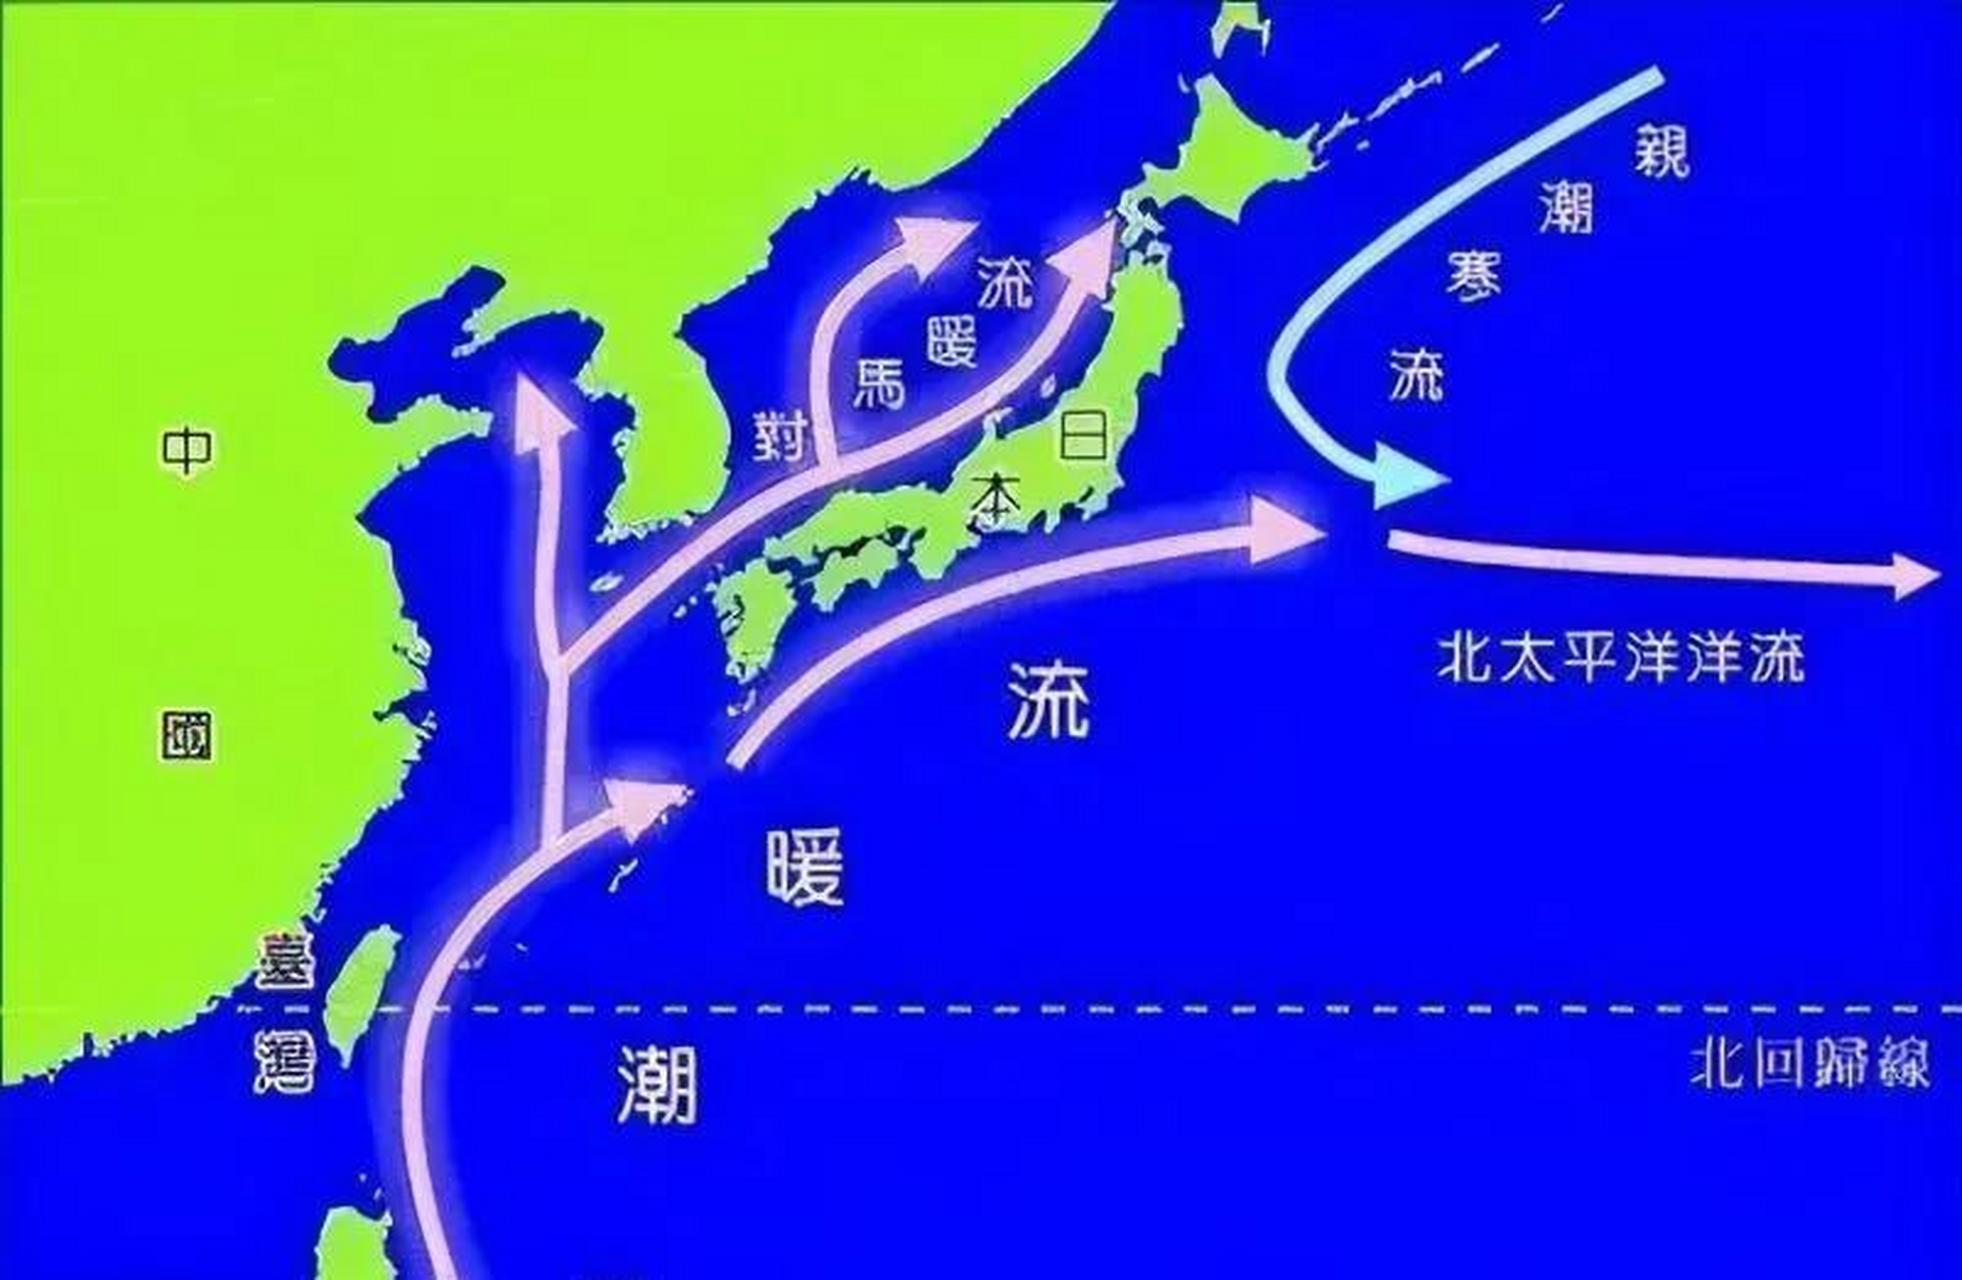 日本丧尽天良排核废水,七月份以后只能跟着洋流吃海鲜自求多福了!